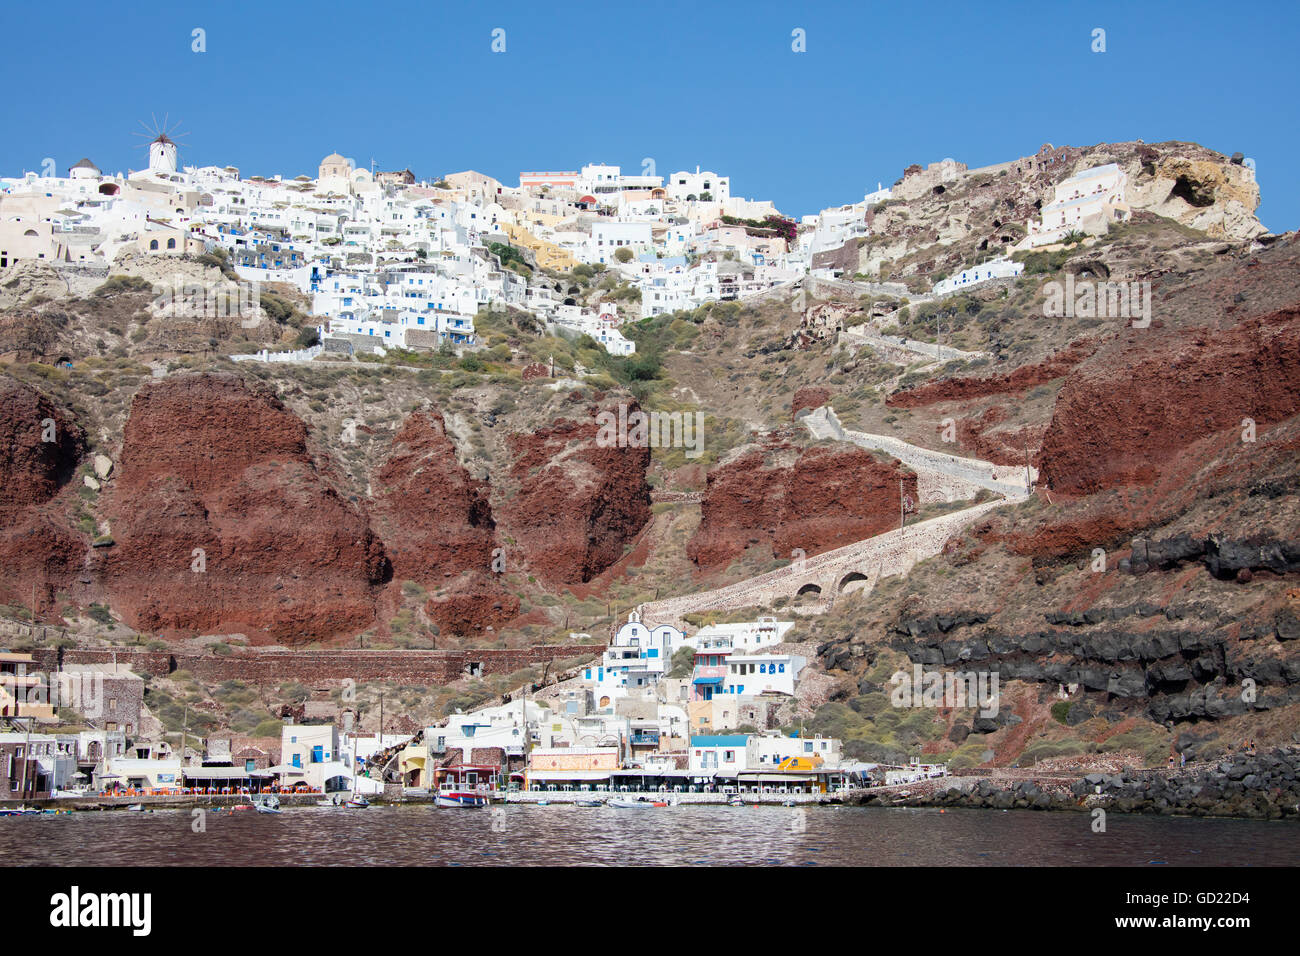 Típico pueblo griego encaramado sobre roca volcánica con casas blancas y azules y los molinos de viento, Santorini, Cícladas, Grecia Foto de stock